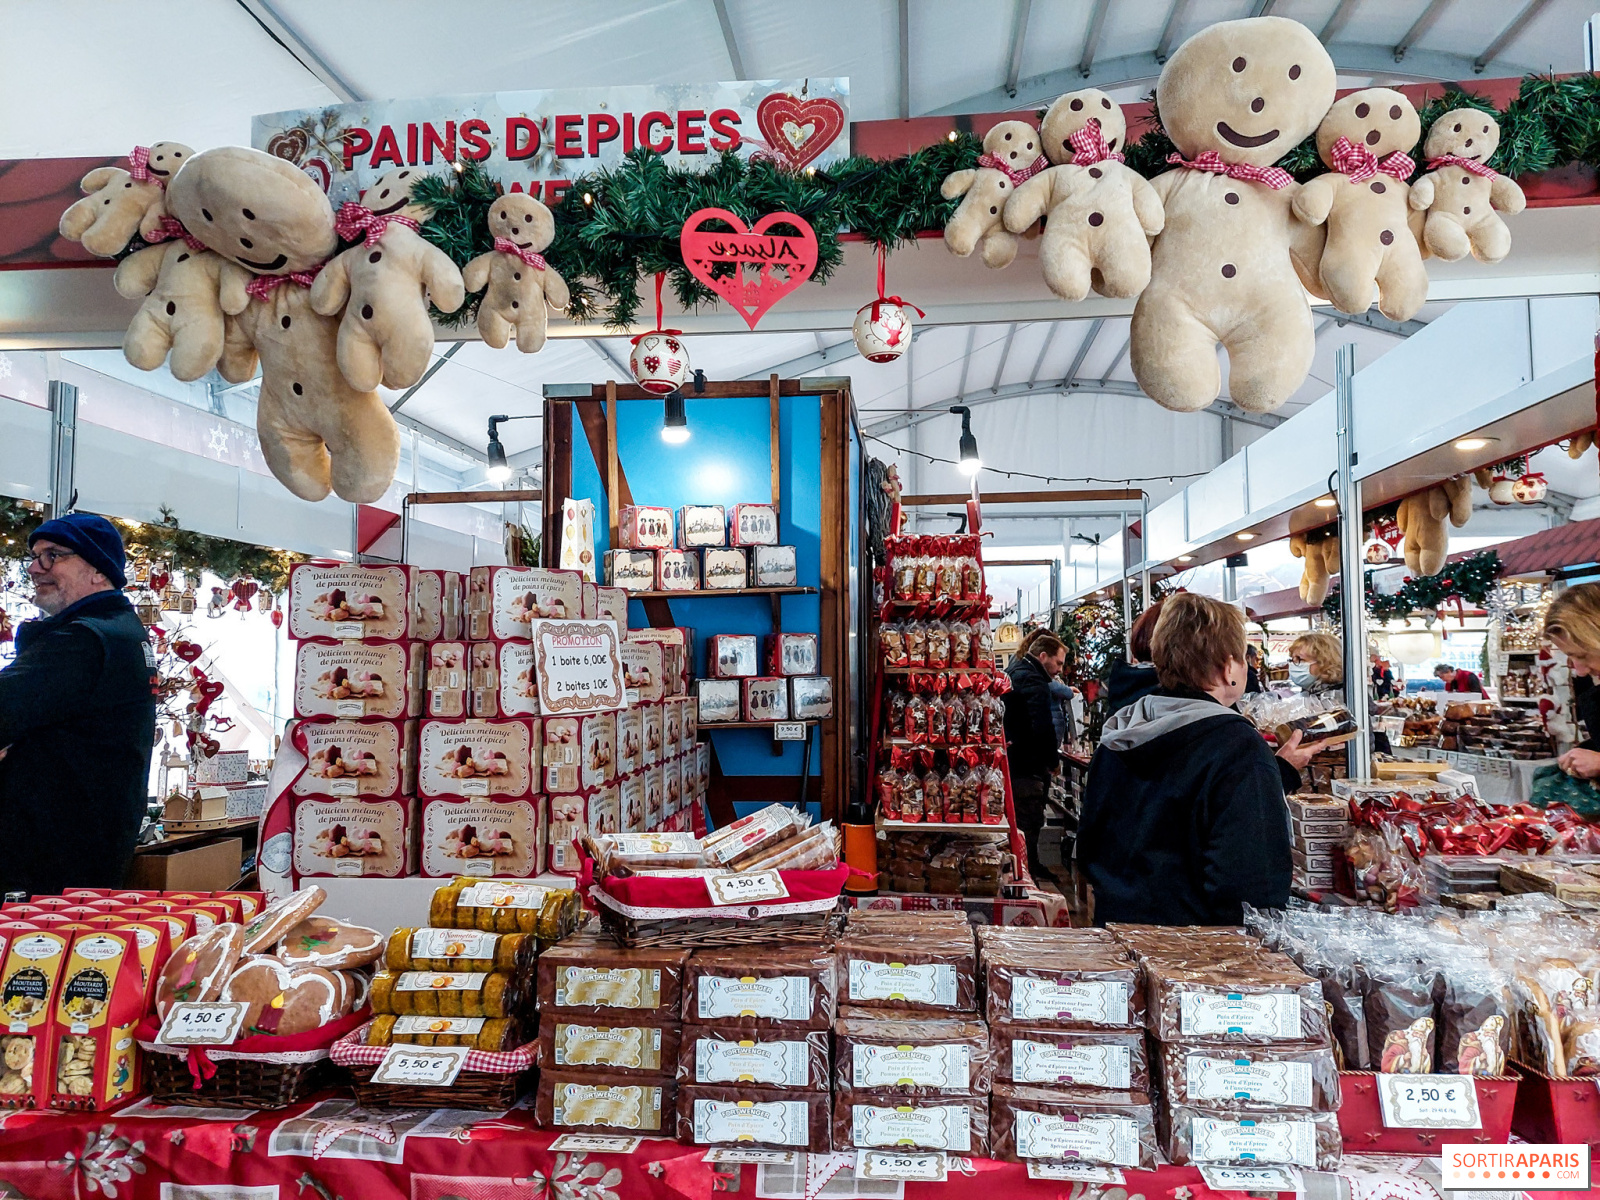 Alsatian Christmas Market at Gare de l'Est in Paris is one of the most unforgettable Christmas markets in Paris